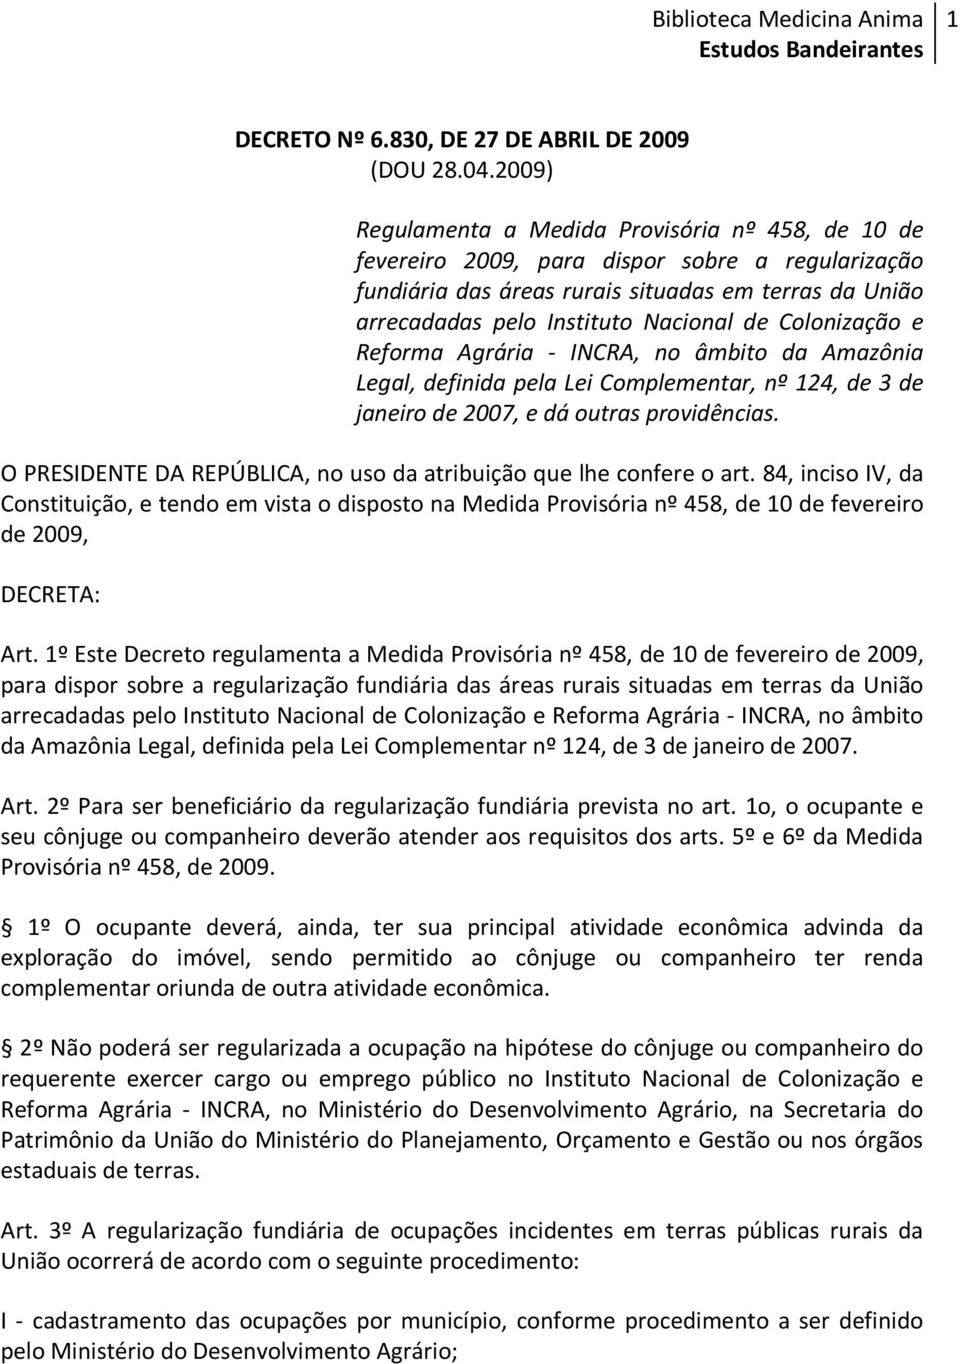 Colonização e Reforma Agrária - INCRA, no âmbito da Amazônia Legal, definida pela Lei Complementar, nº 124, de 3 de janeiro de 2007, e dá outras providências.